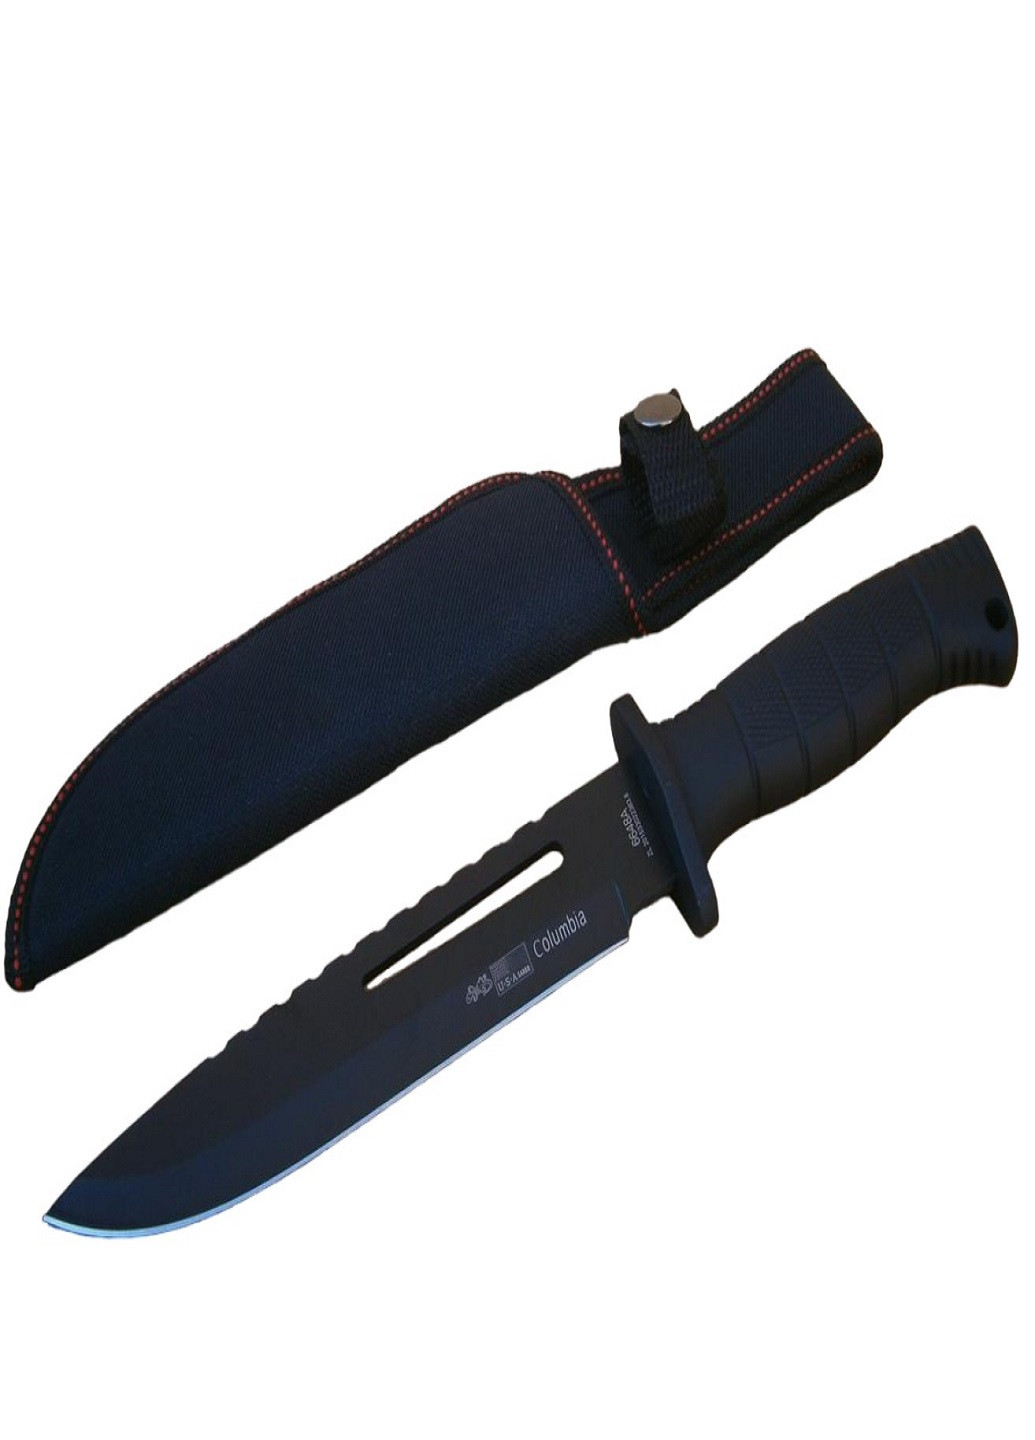 Униваерсальный туристический нож с чехлом Columbia 6648А 30см VTech (260267025)